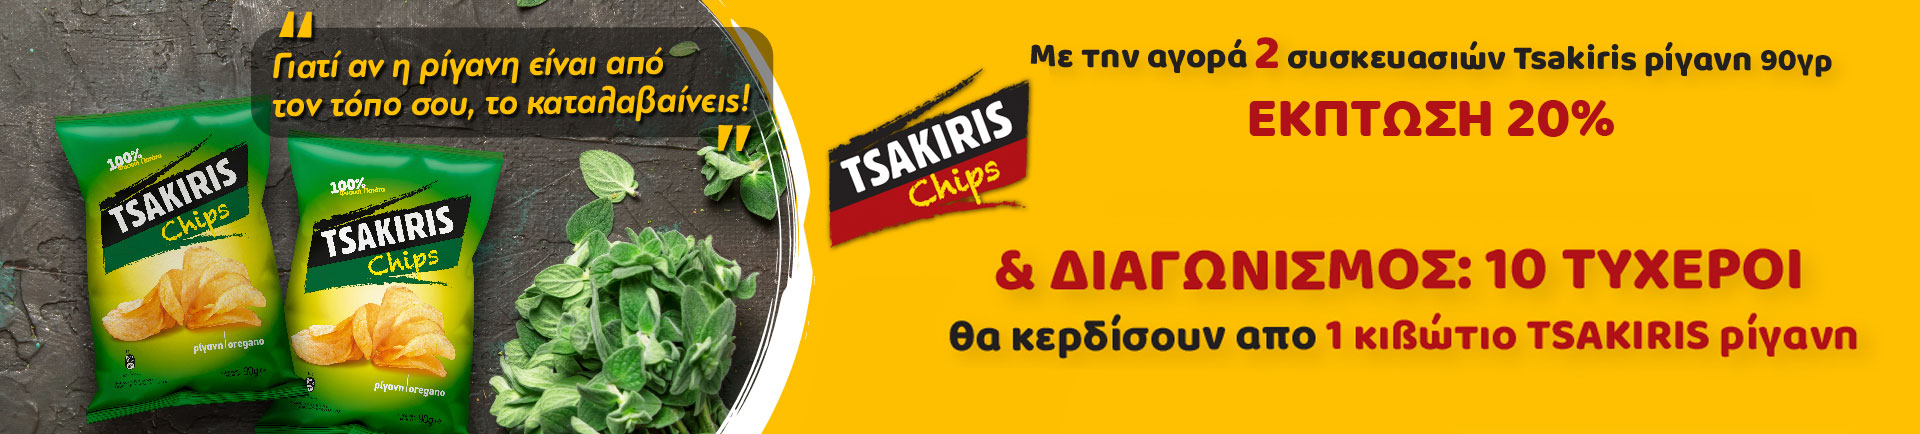 Aγοράζοντας Tsakiris τσιπς με ρίγανη,10 τυχεροί θα κερδίσουν από 1 κούτα Τσακίρης ρίγανη για να τα απολαύσουν με τους αγαπημένους τους.